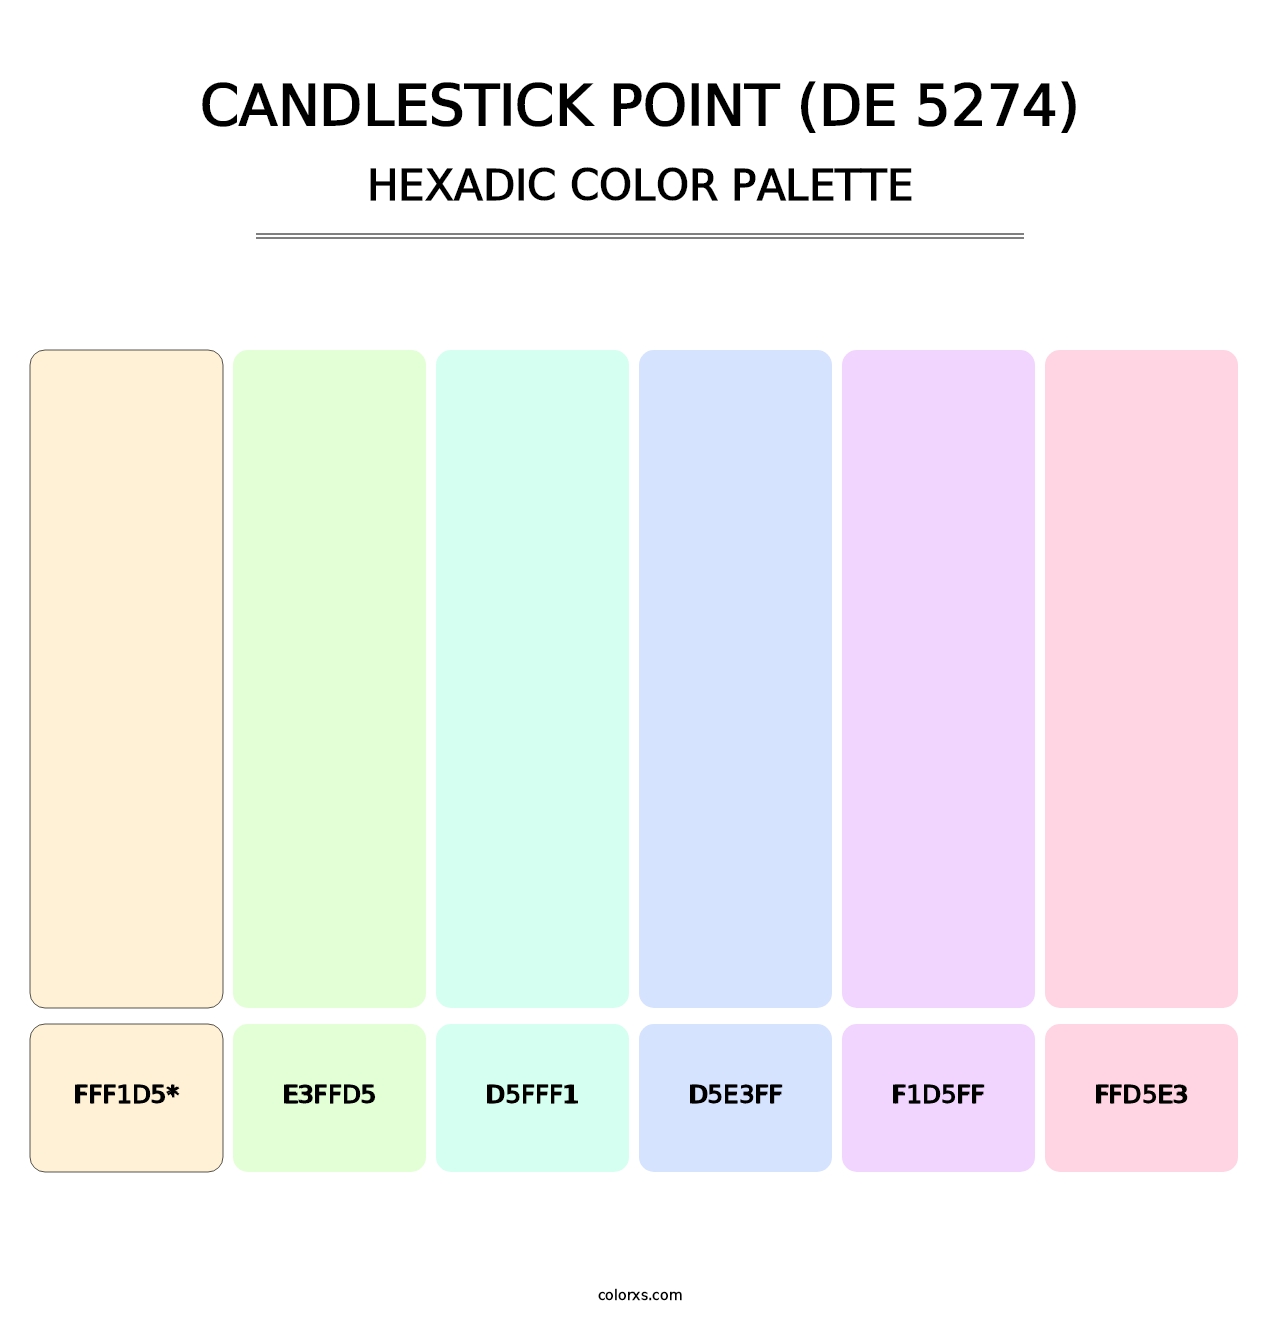 Candlestick Point (DE 5274) - Hexadic Color Palette